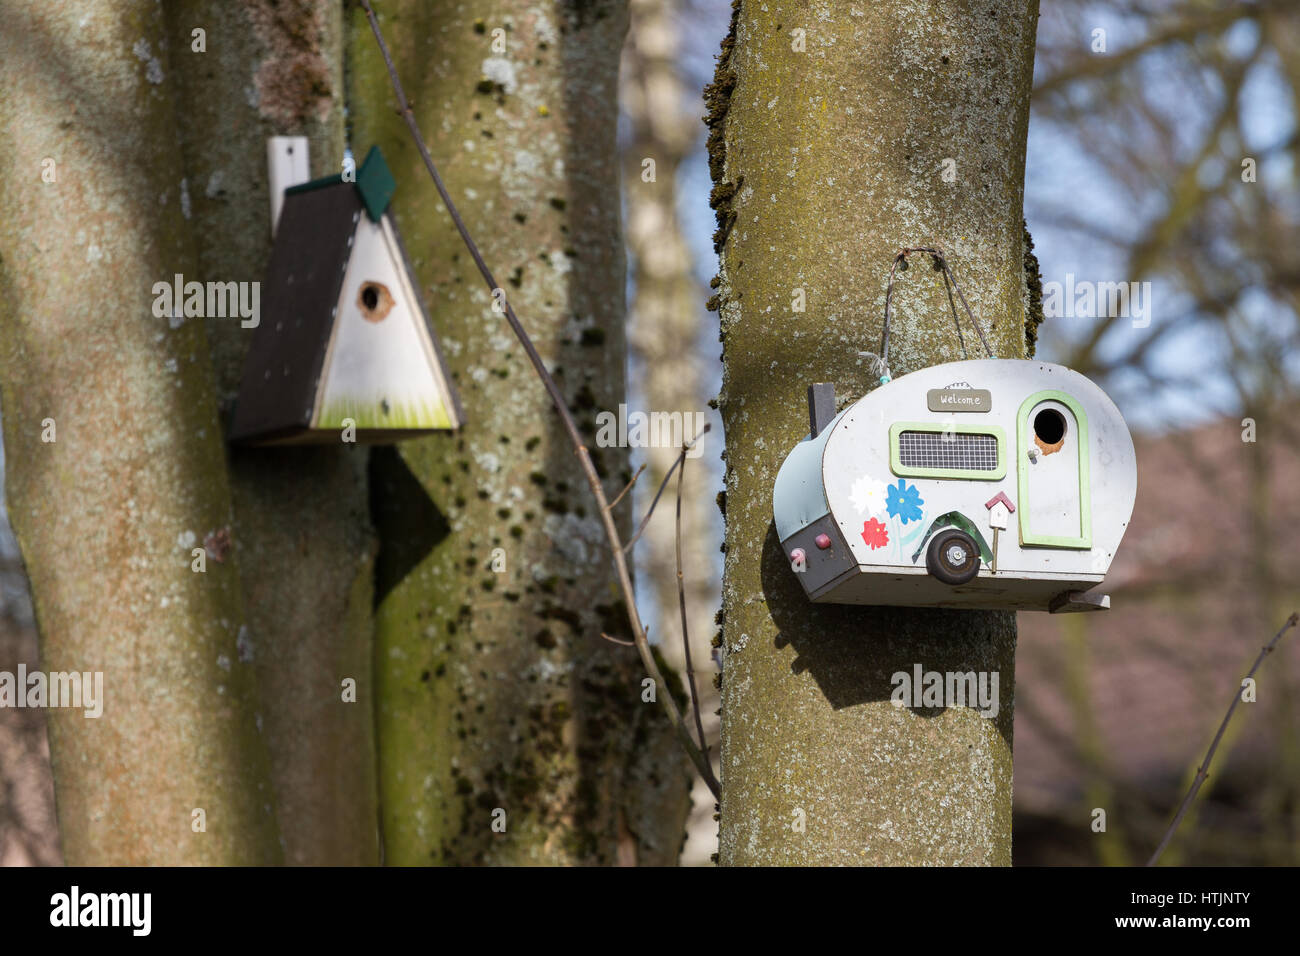 Una caravana bird box/ caja de nido colgando de un árbol en el bosque en un jardín. Foto de stock